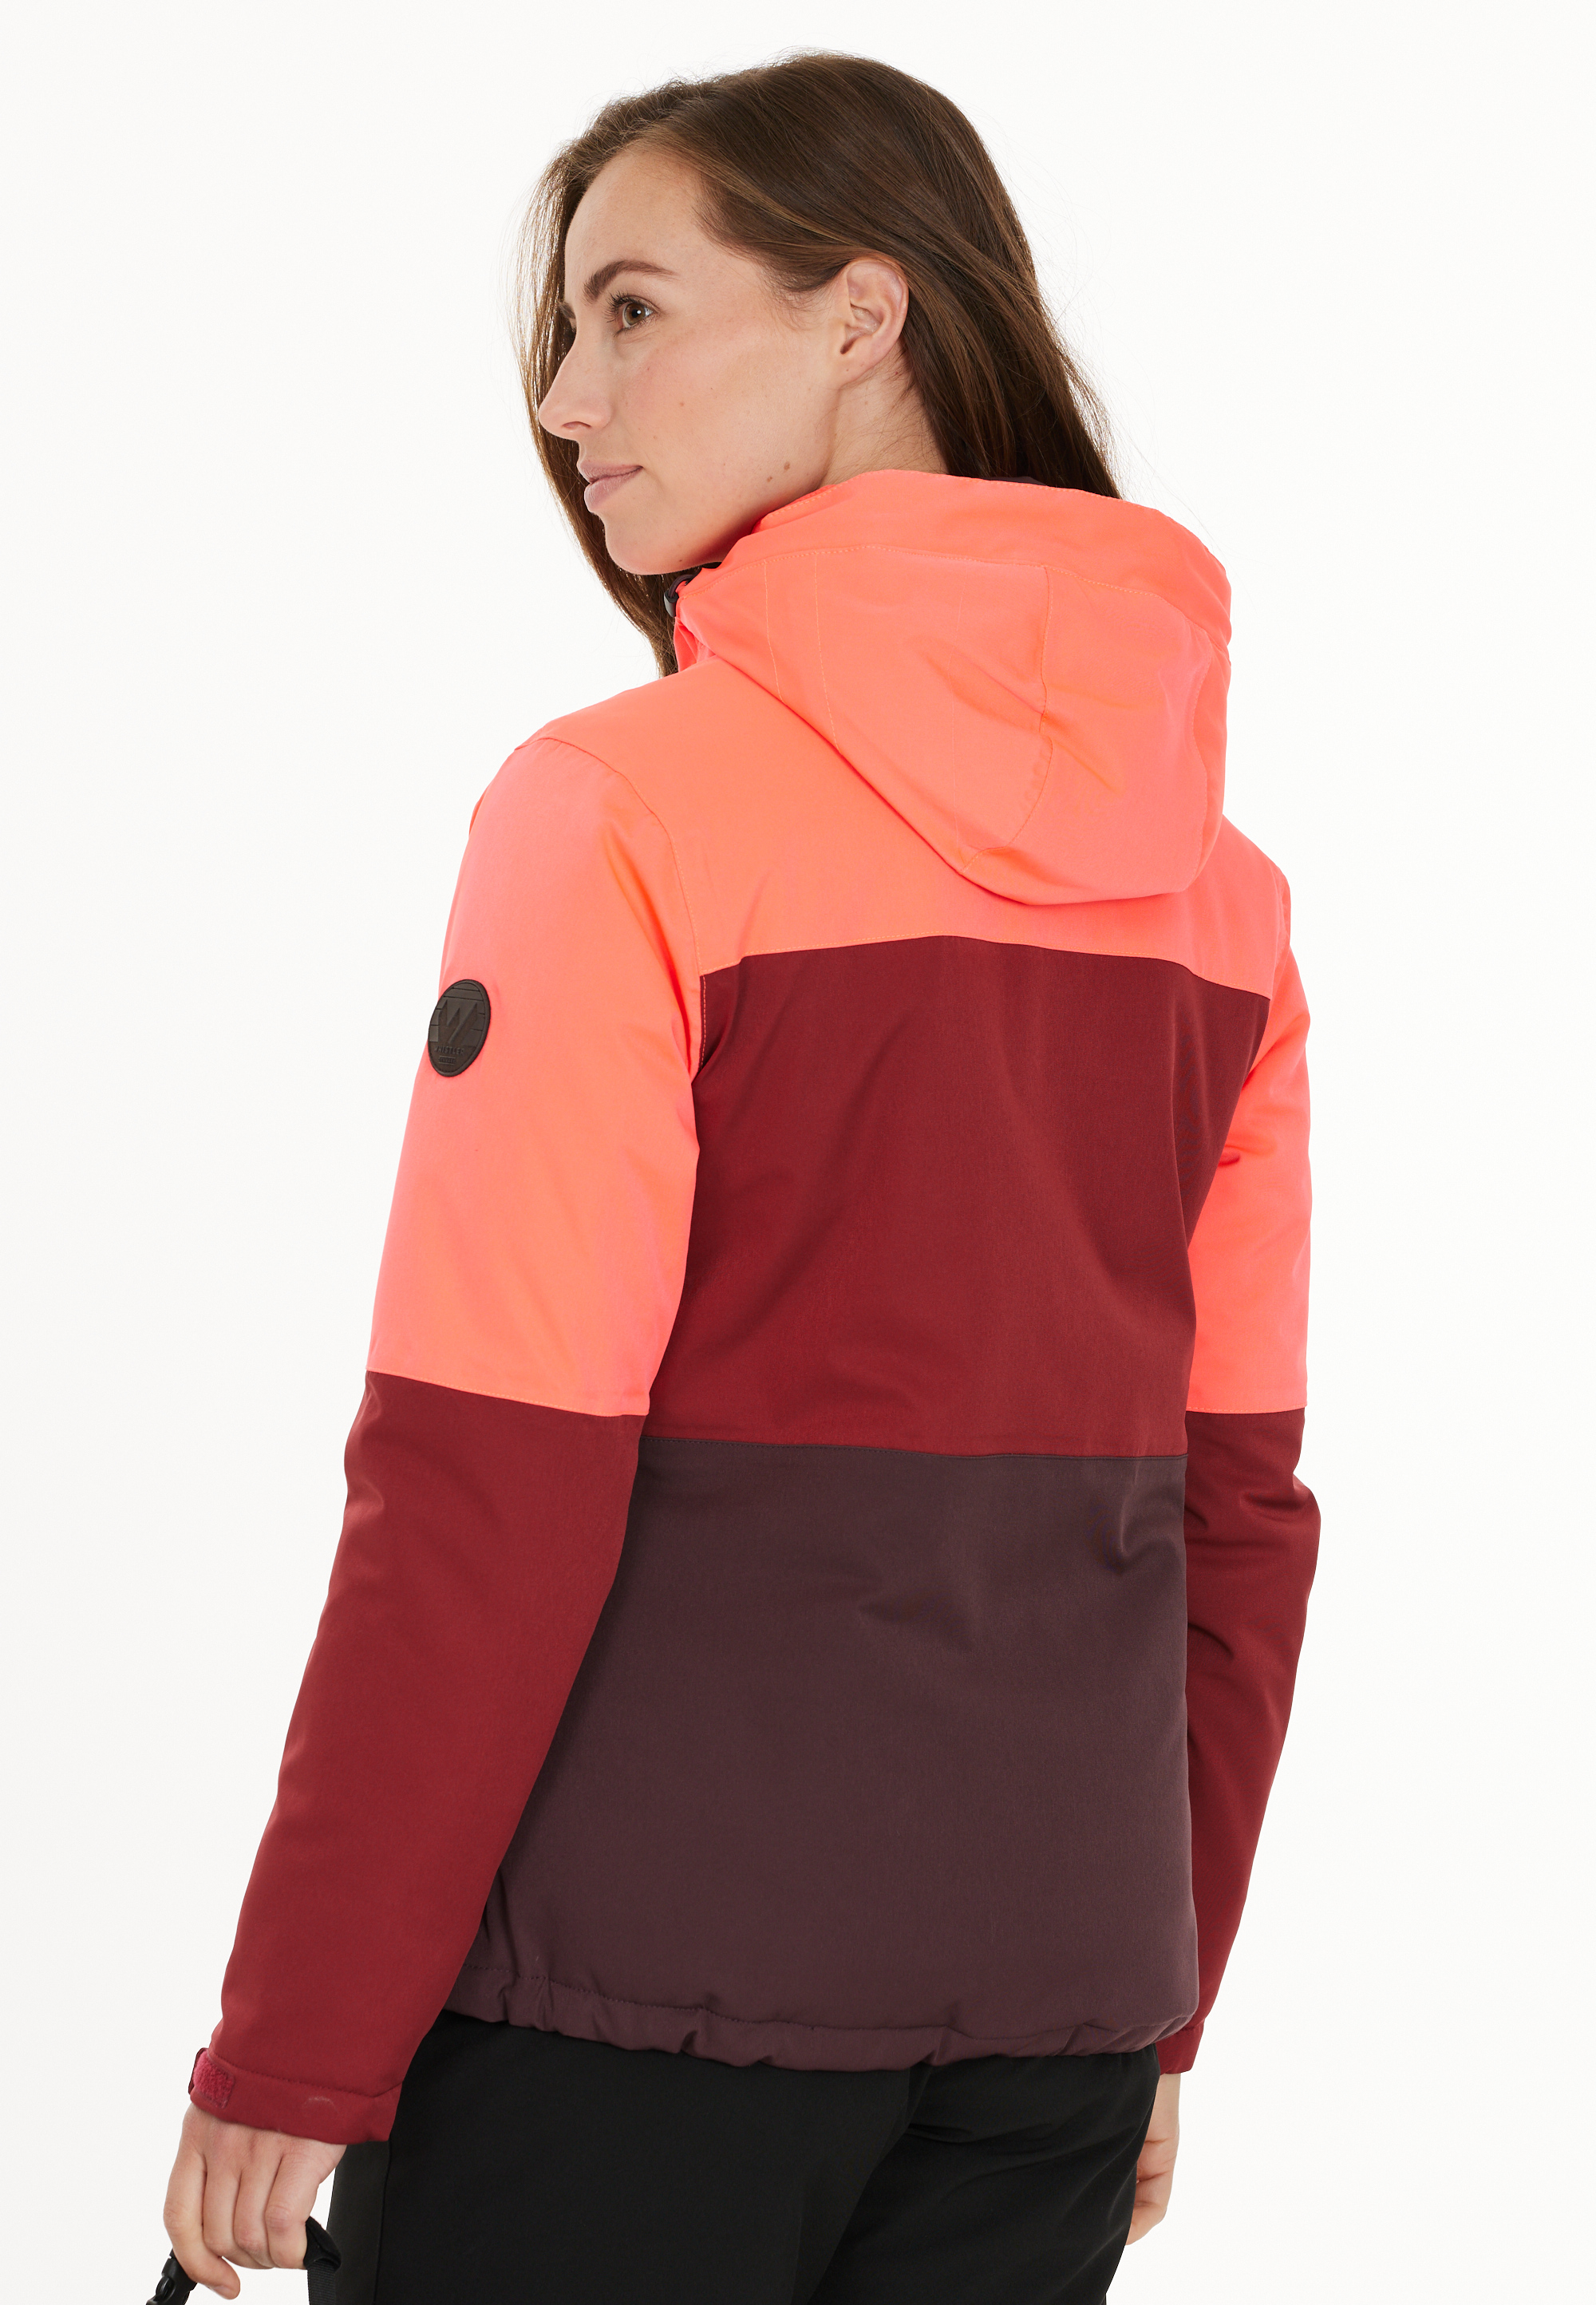 WHISTLER Virago W 4-way Stretch Ski Jacket W online kaufen